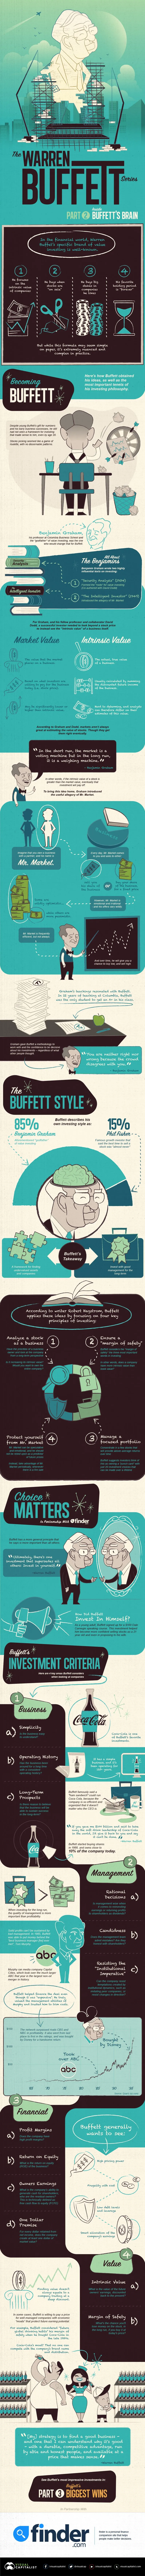 The Warren Buffett Series Part 2 - #infographic